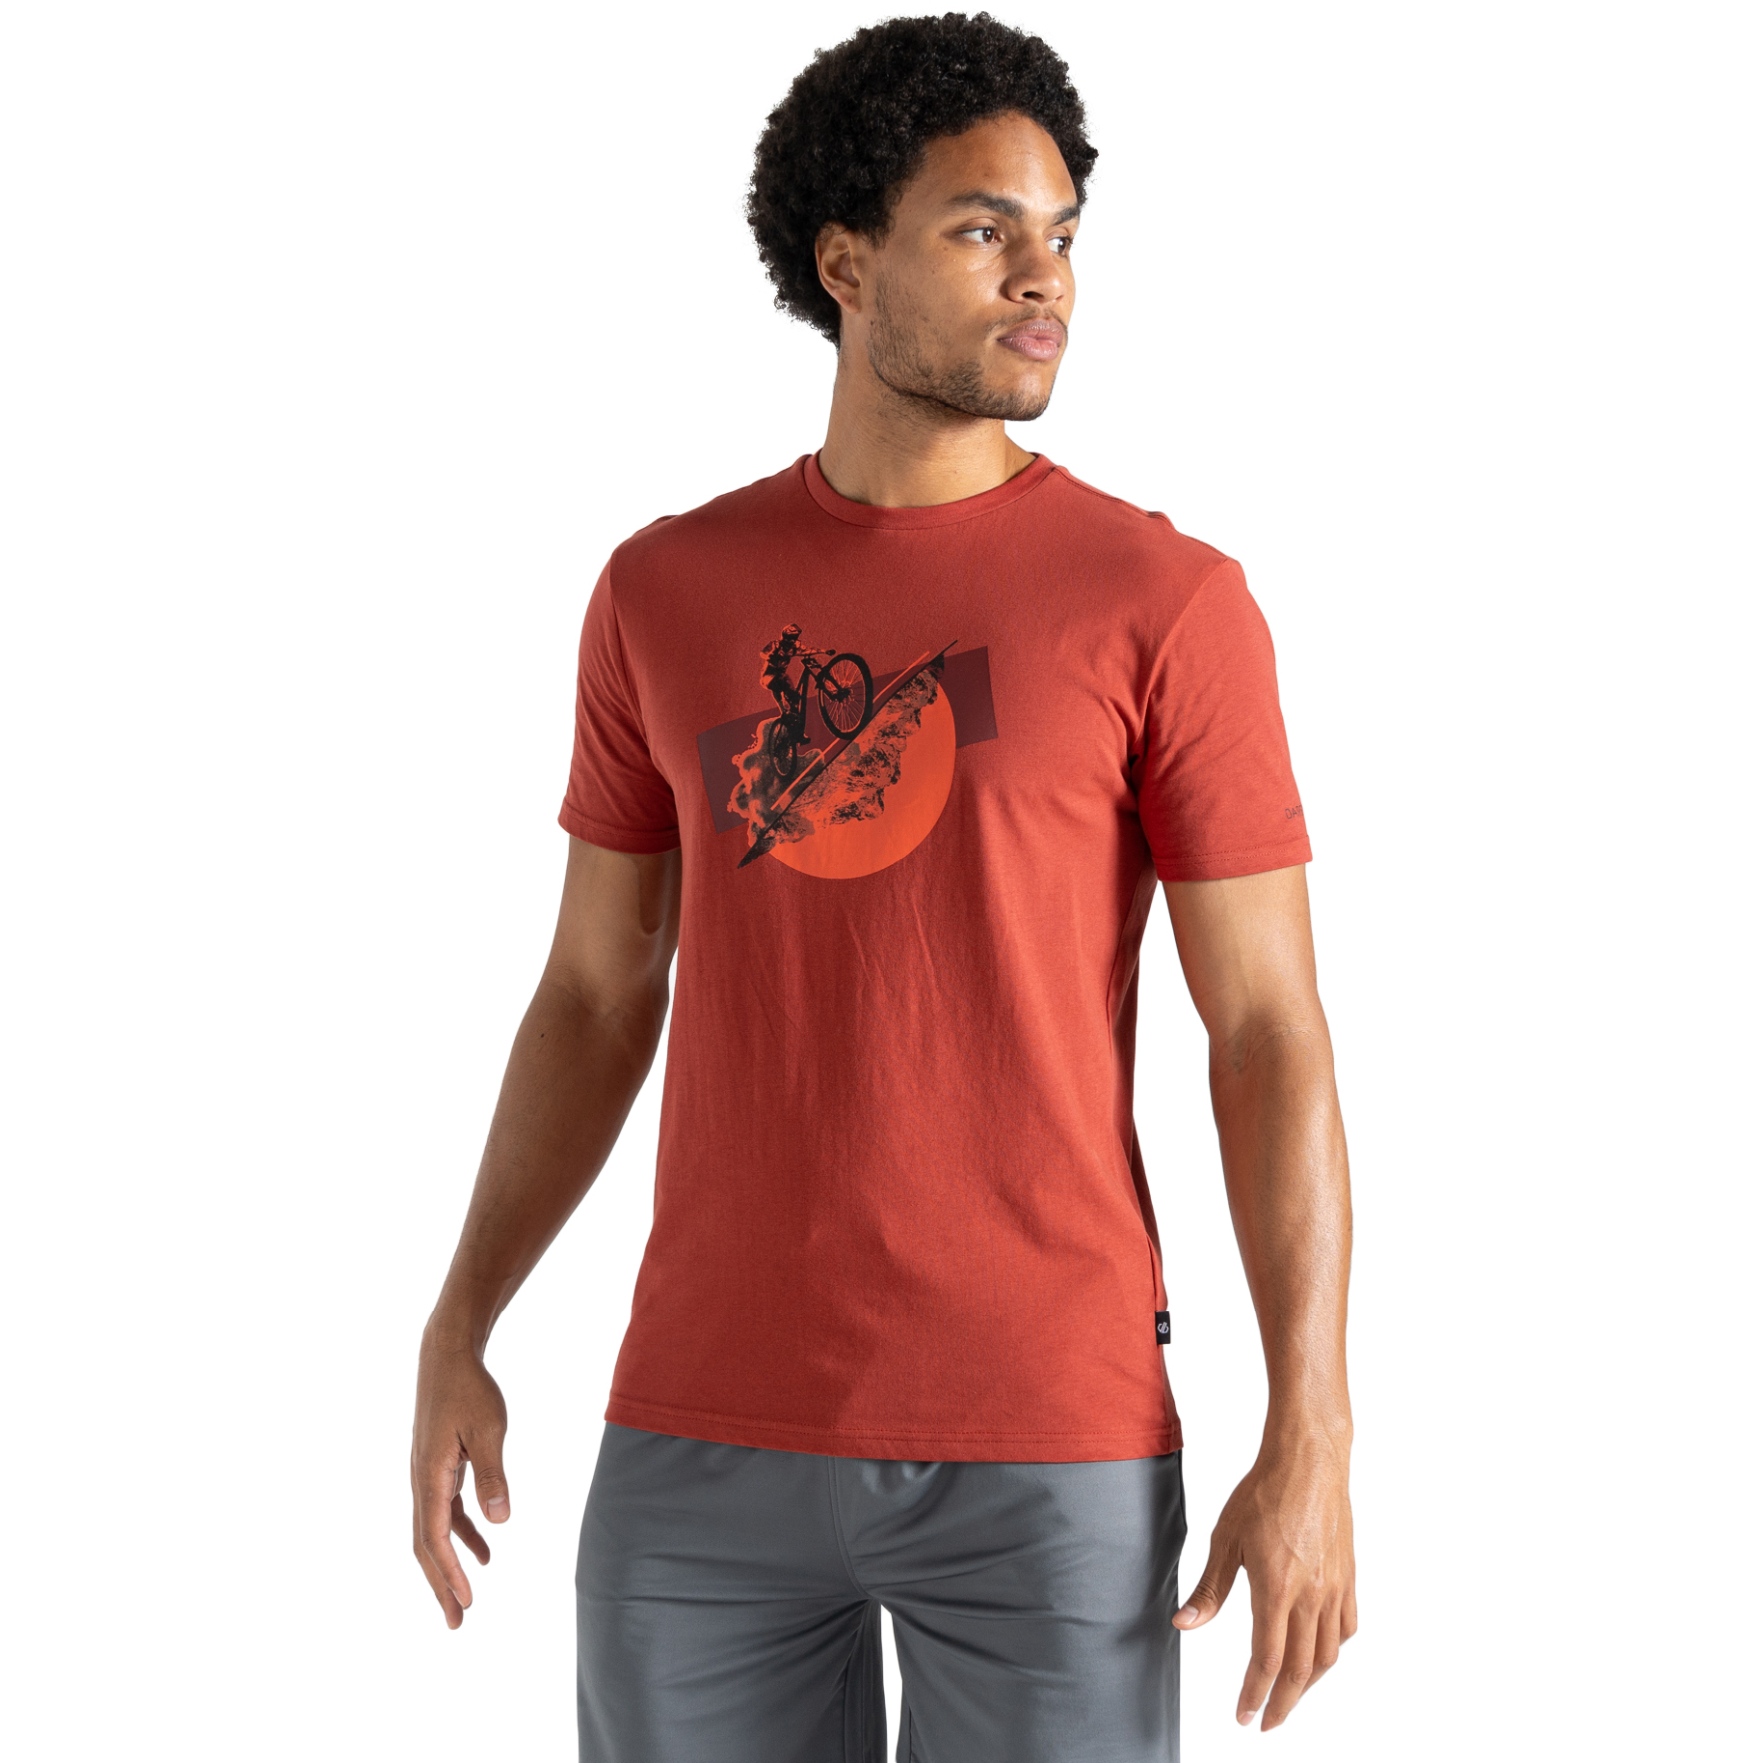 Produktbild von Dare 2b Movement II T-Shirt Herren - 21K Tuscan Red